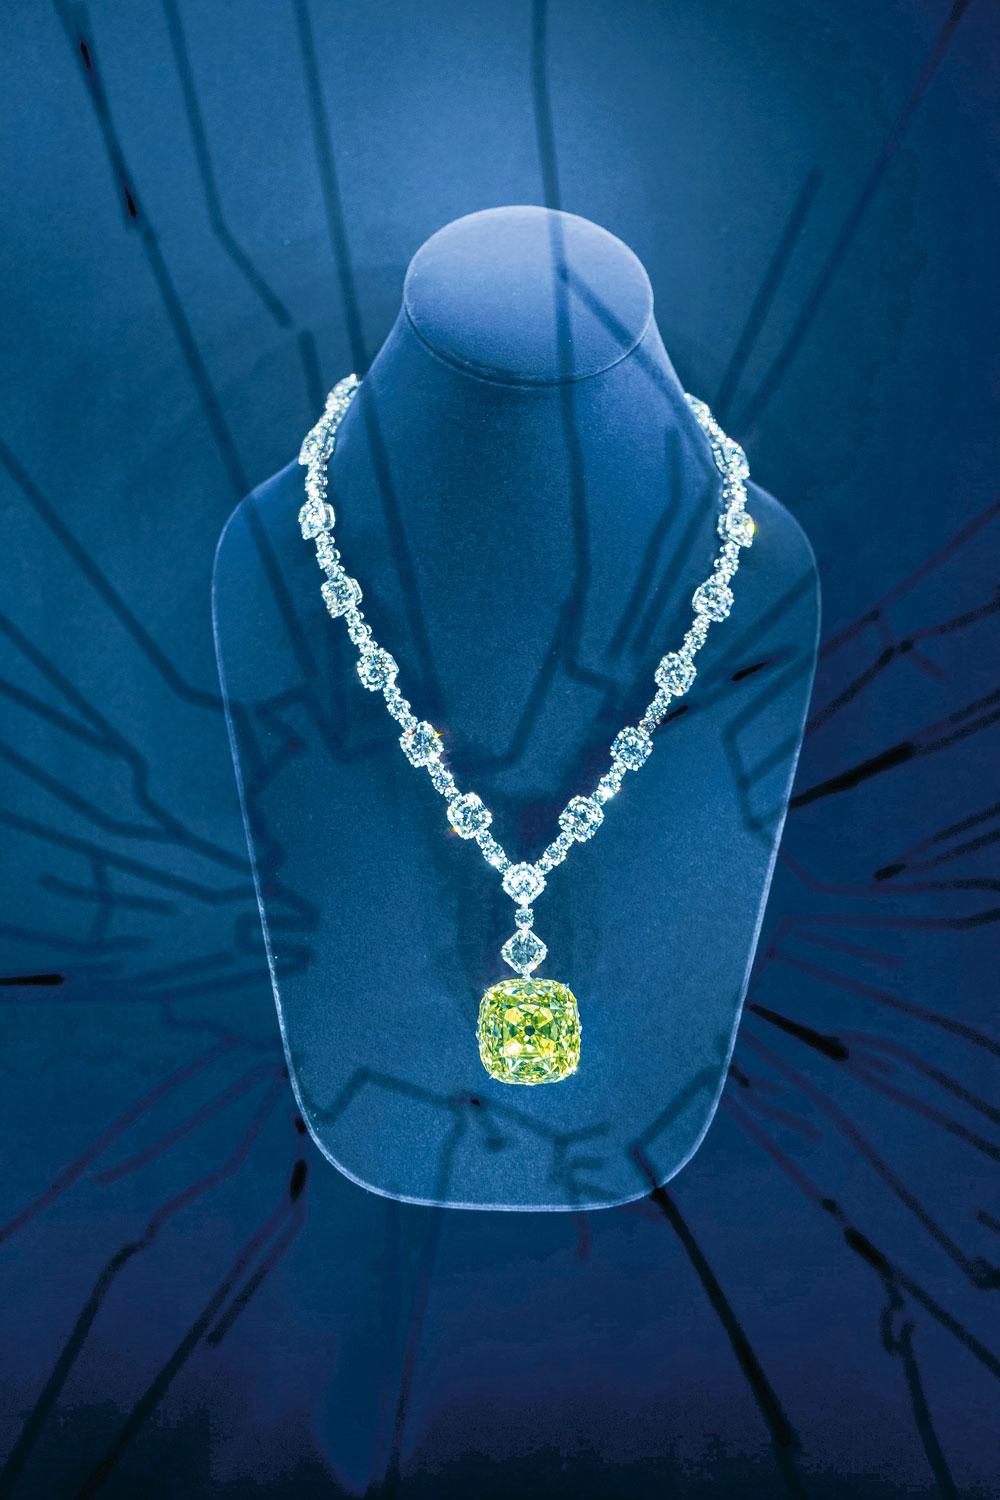 Ce diamant jaune, l'un des plus beaux du monde, a inspiré la nouvelle fragrance de Tiffany & Co.